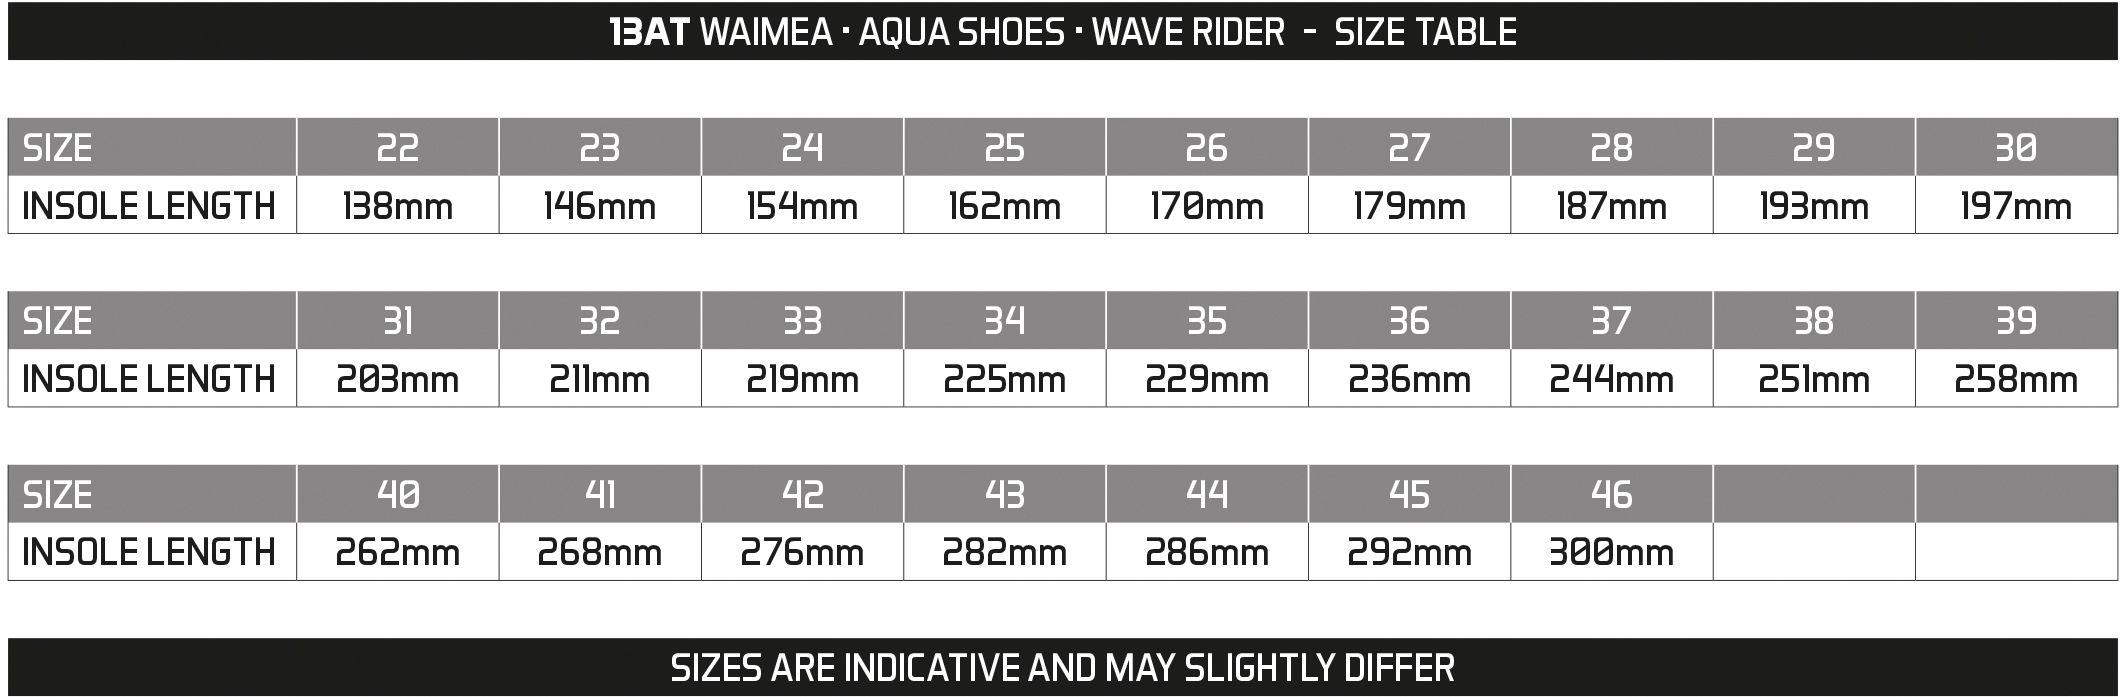 Buty do wody 13AT tabela rozmiarów